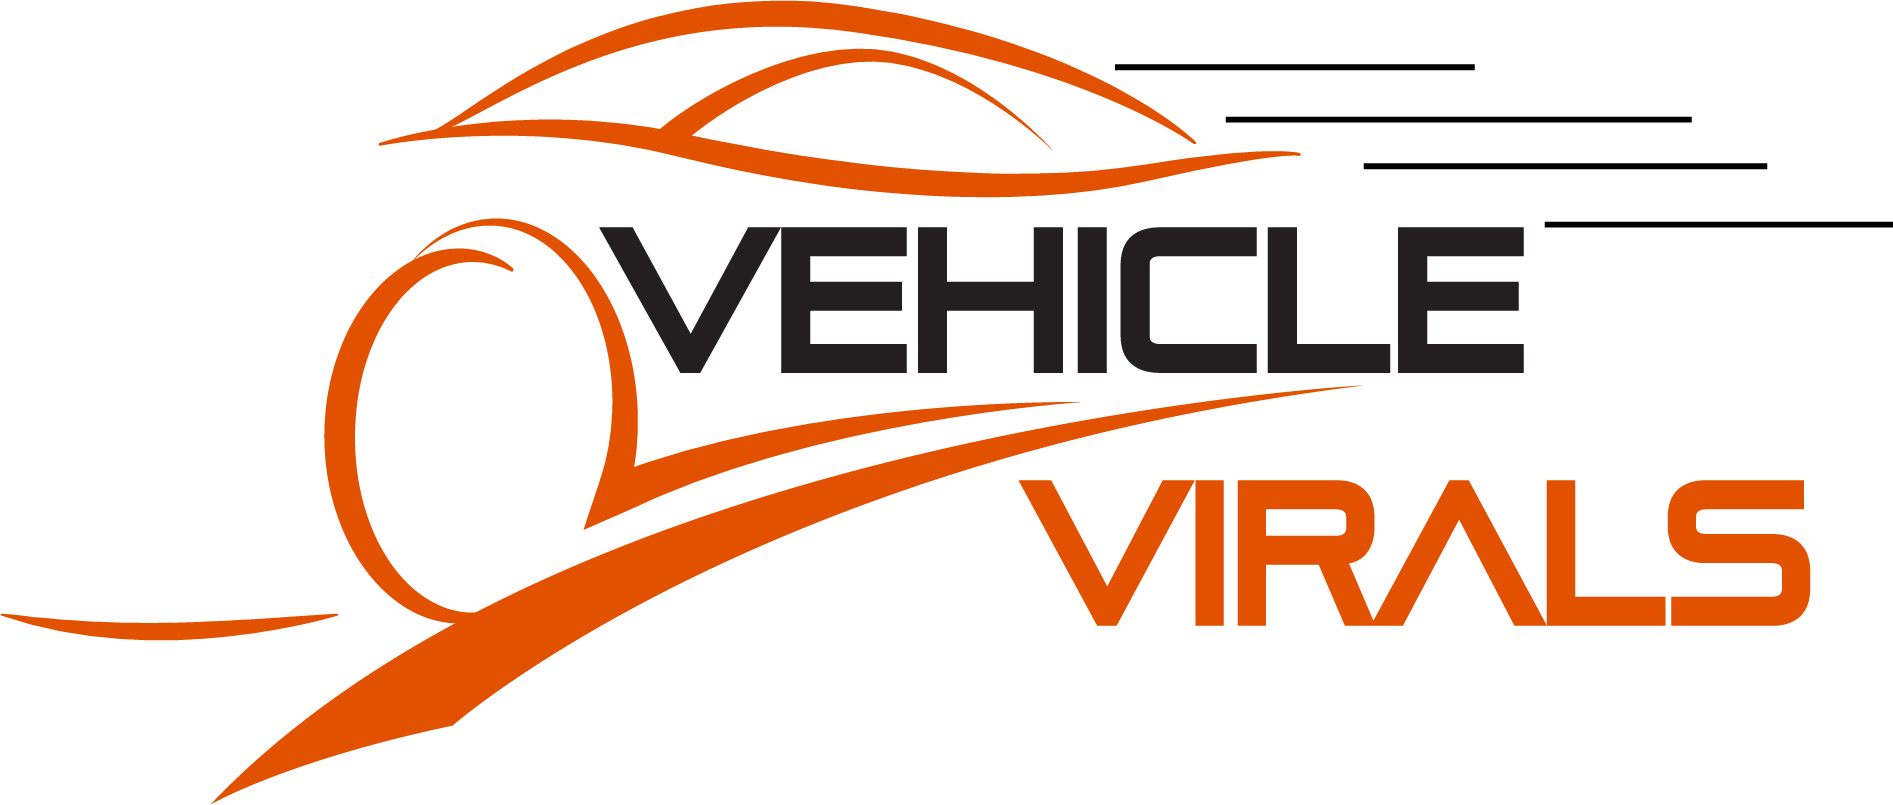 Vehicle Virals